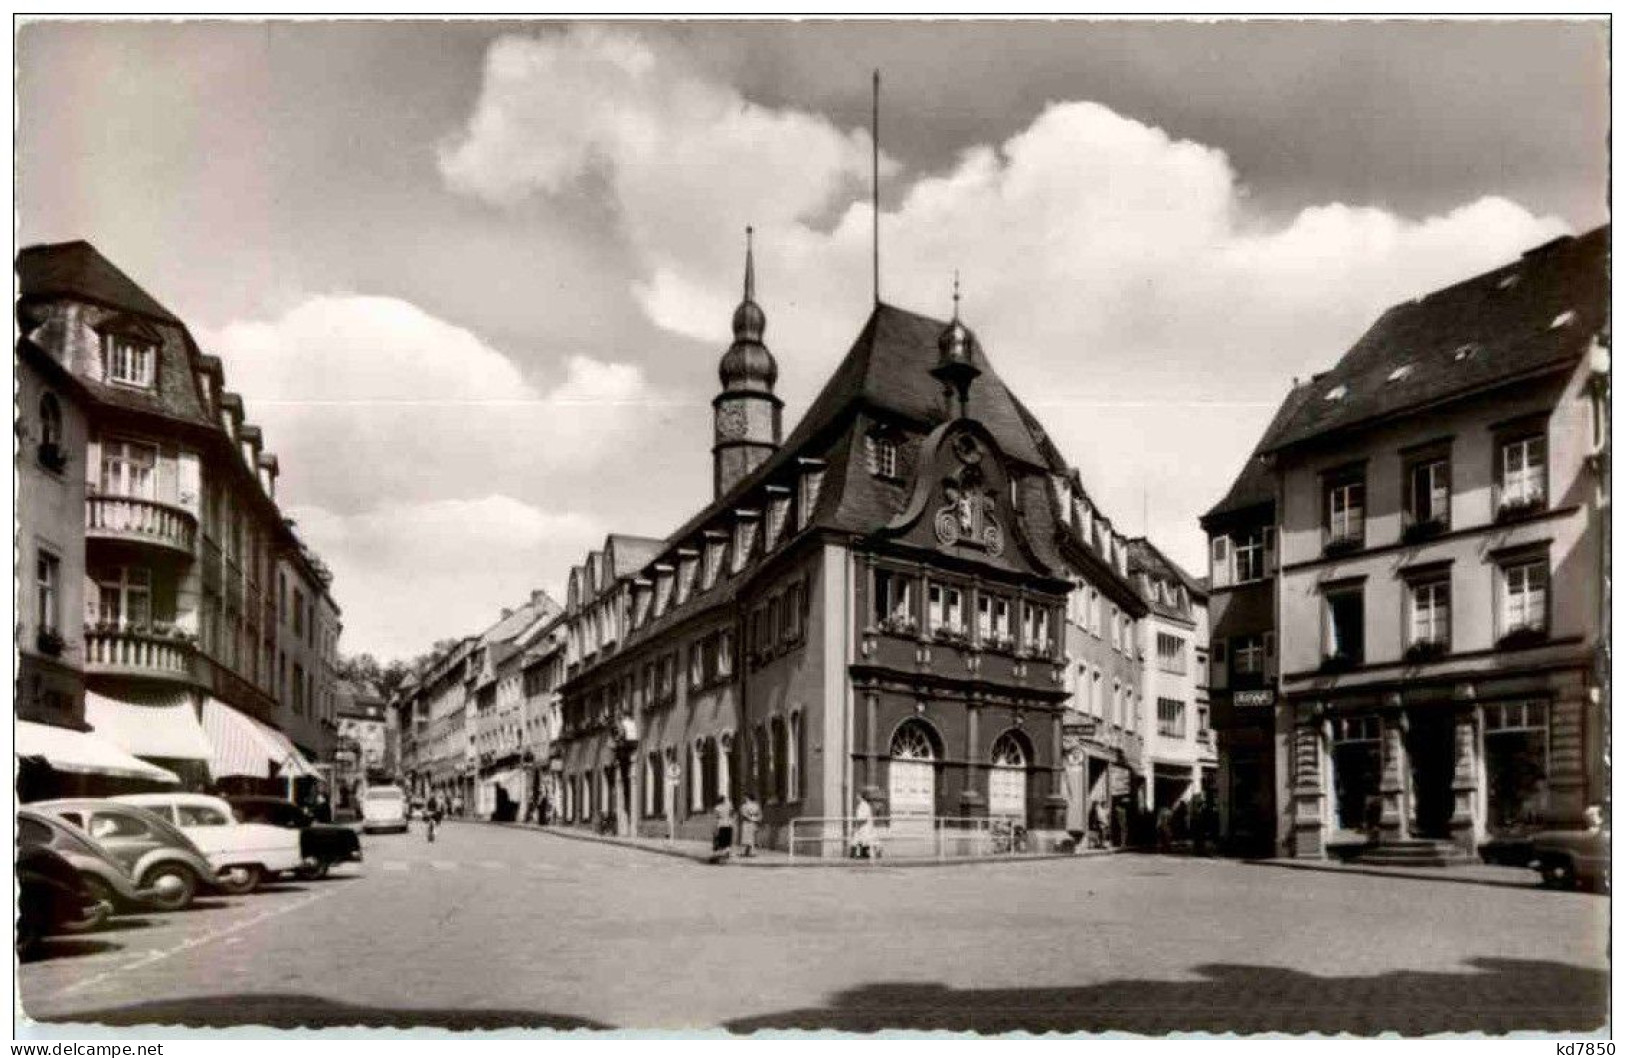 Wittlich - Rathaus Mit Marktplatz - Wittlich